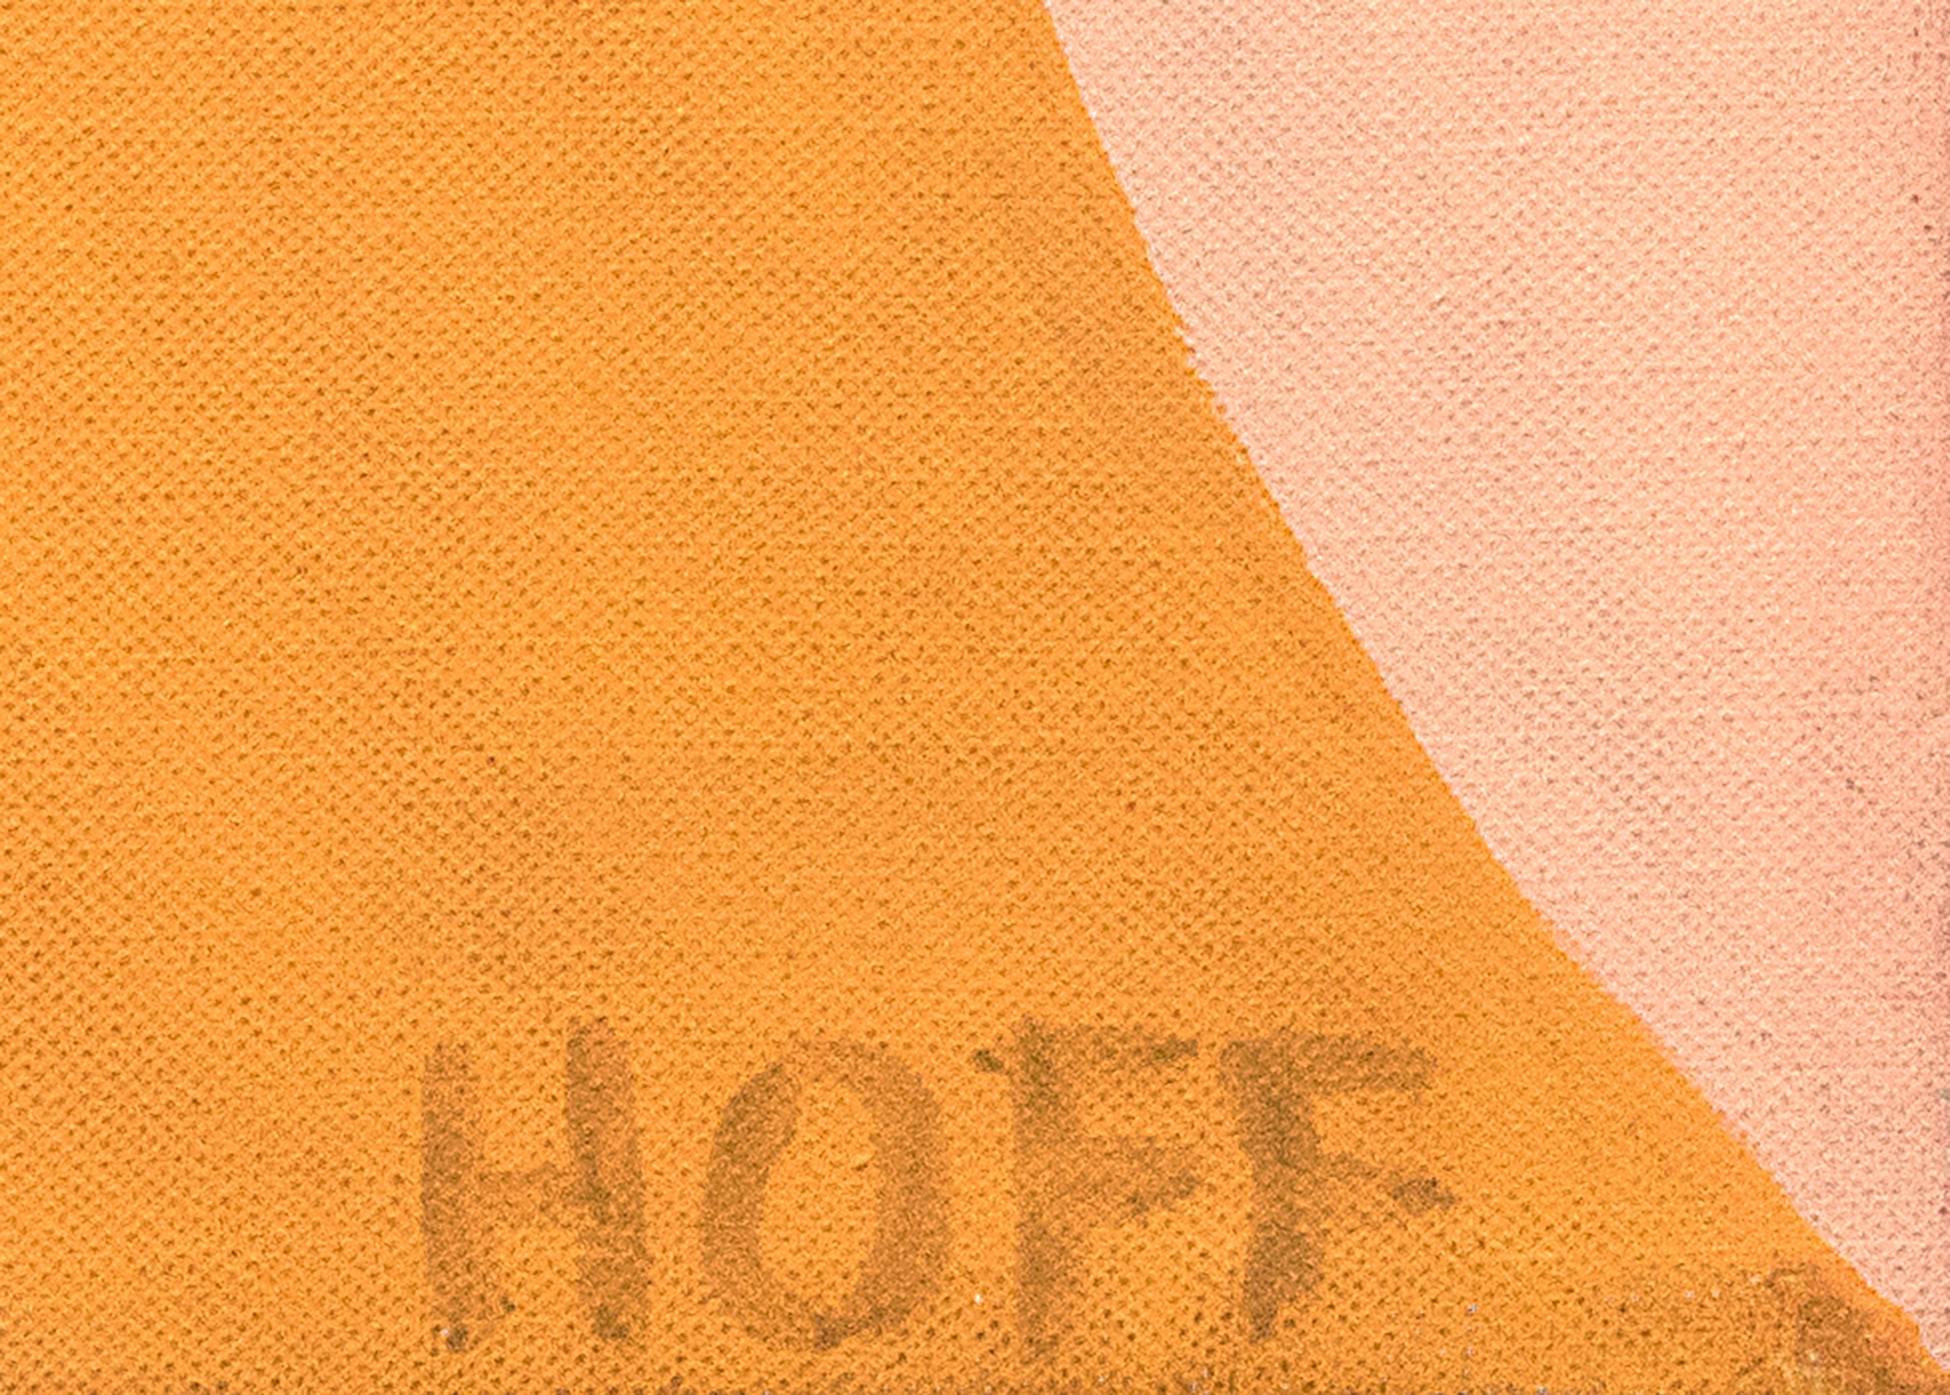 Tunnel de couleurs, peinture à l'huile géométrique abstraite colorée des années 1970, rose, orange, bleu - Abstrait Painting par Margo Hoff